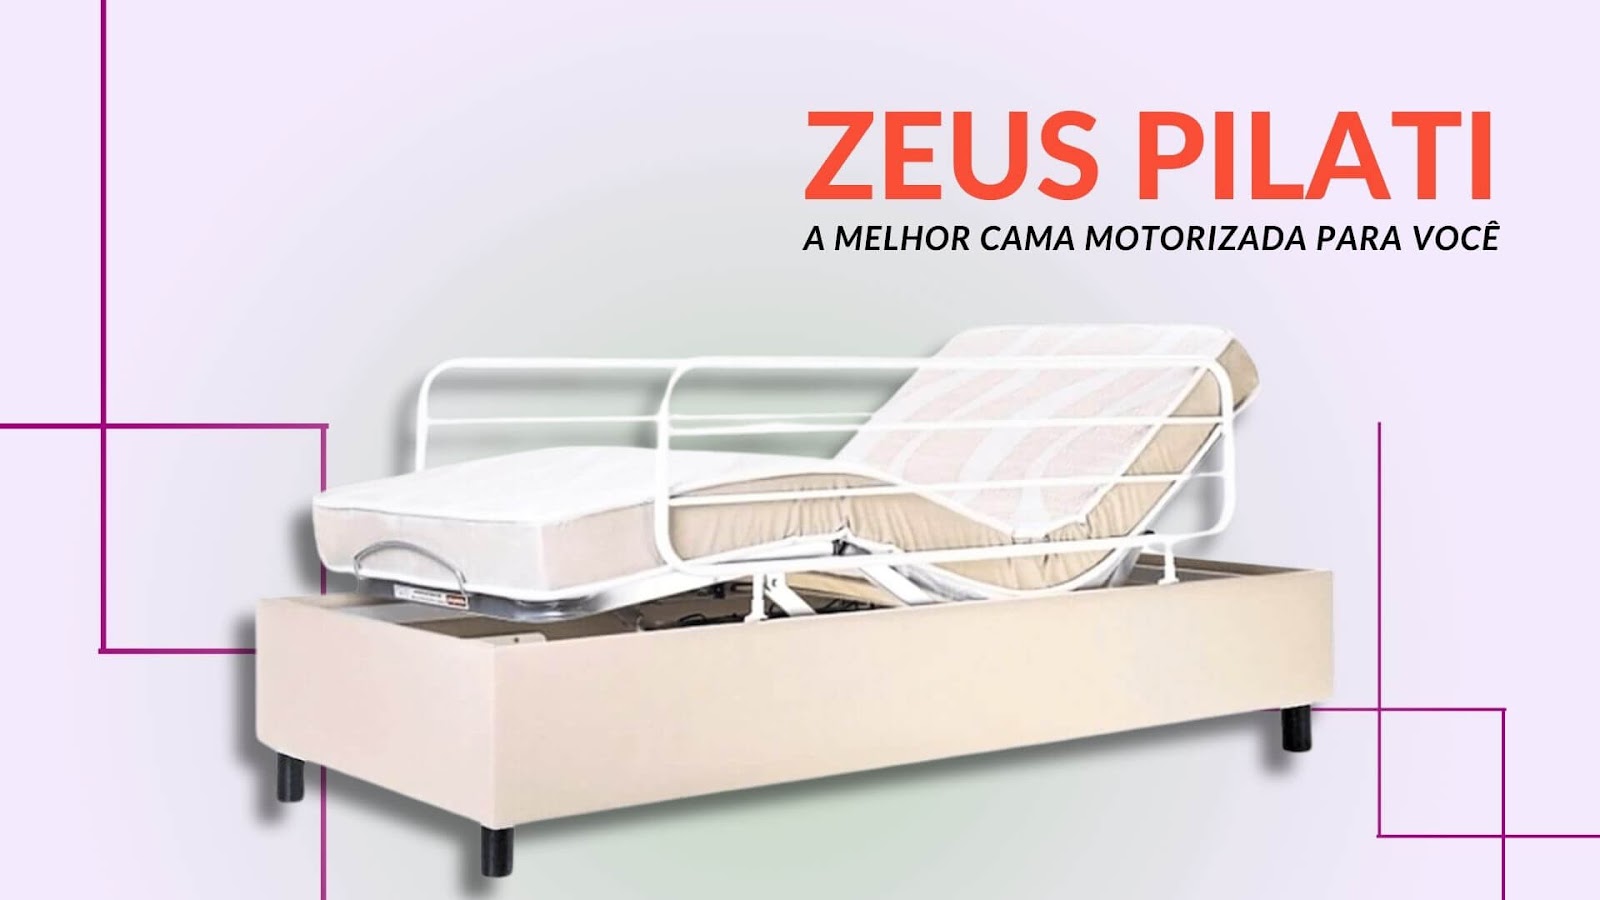 Como uma cama motorizada pode transformar o cuidado no lar?